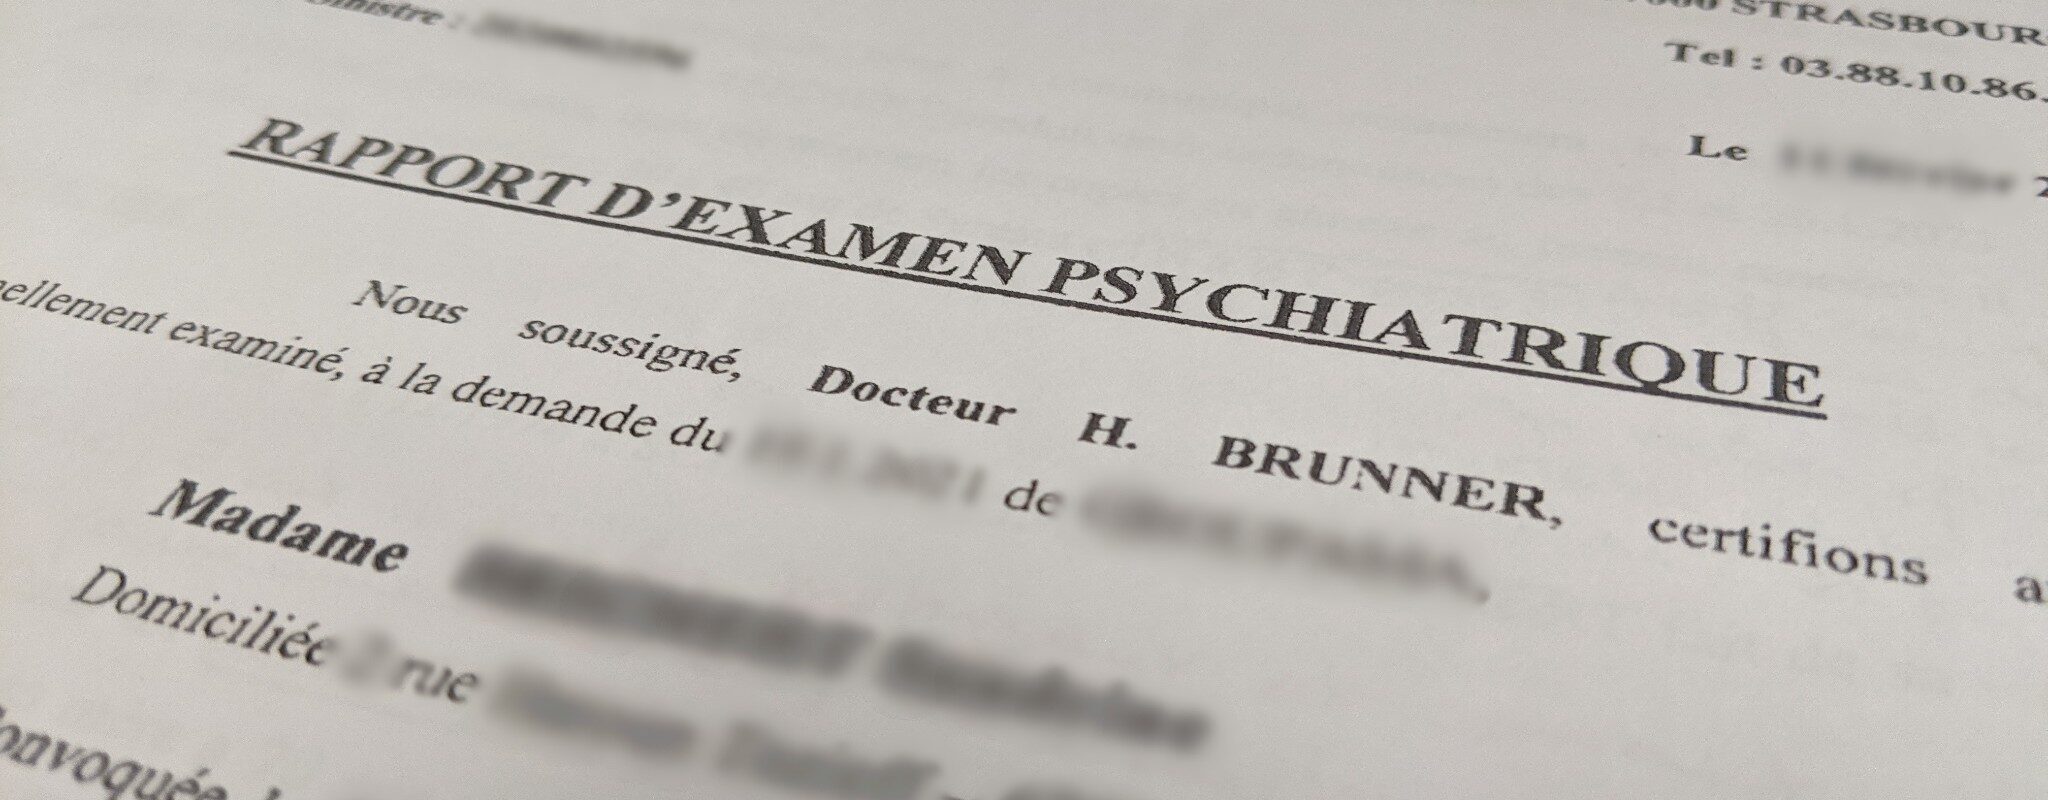 Le docteur Brunner visé par une plainte de sept psychiatres devant l’ordre des médecins